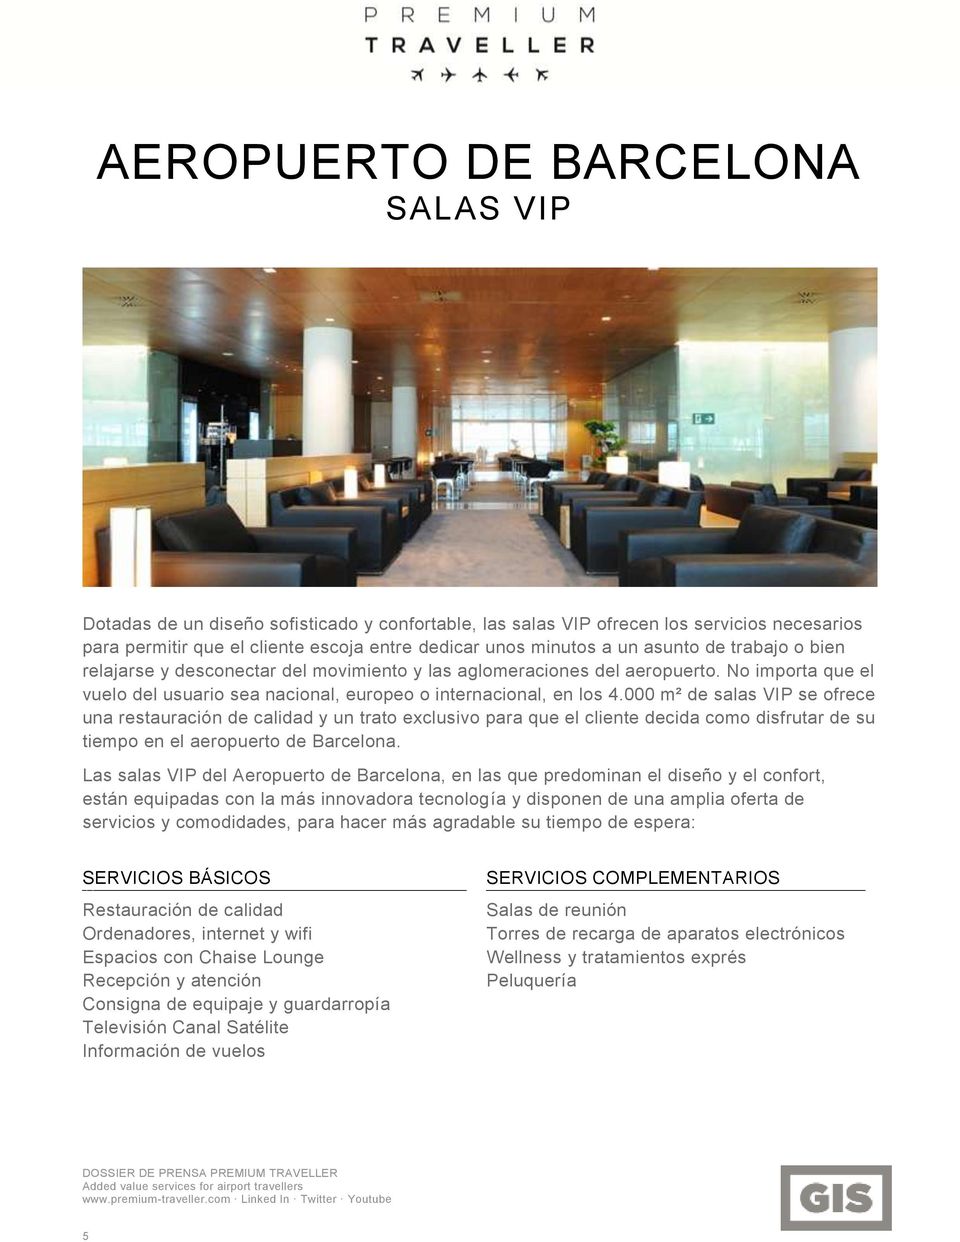 000 m² de salas VIP se ofrece una restauración de calidad y un trato exclusivo para que el cliente decida como disfrutar de su tiempo en el aeropuerto de Barcelona.